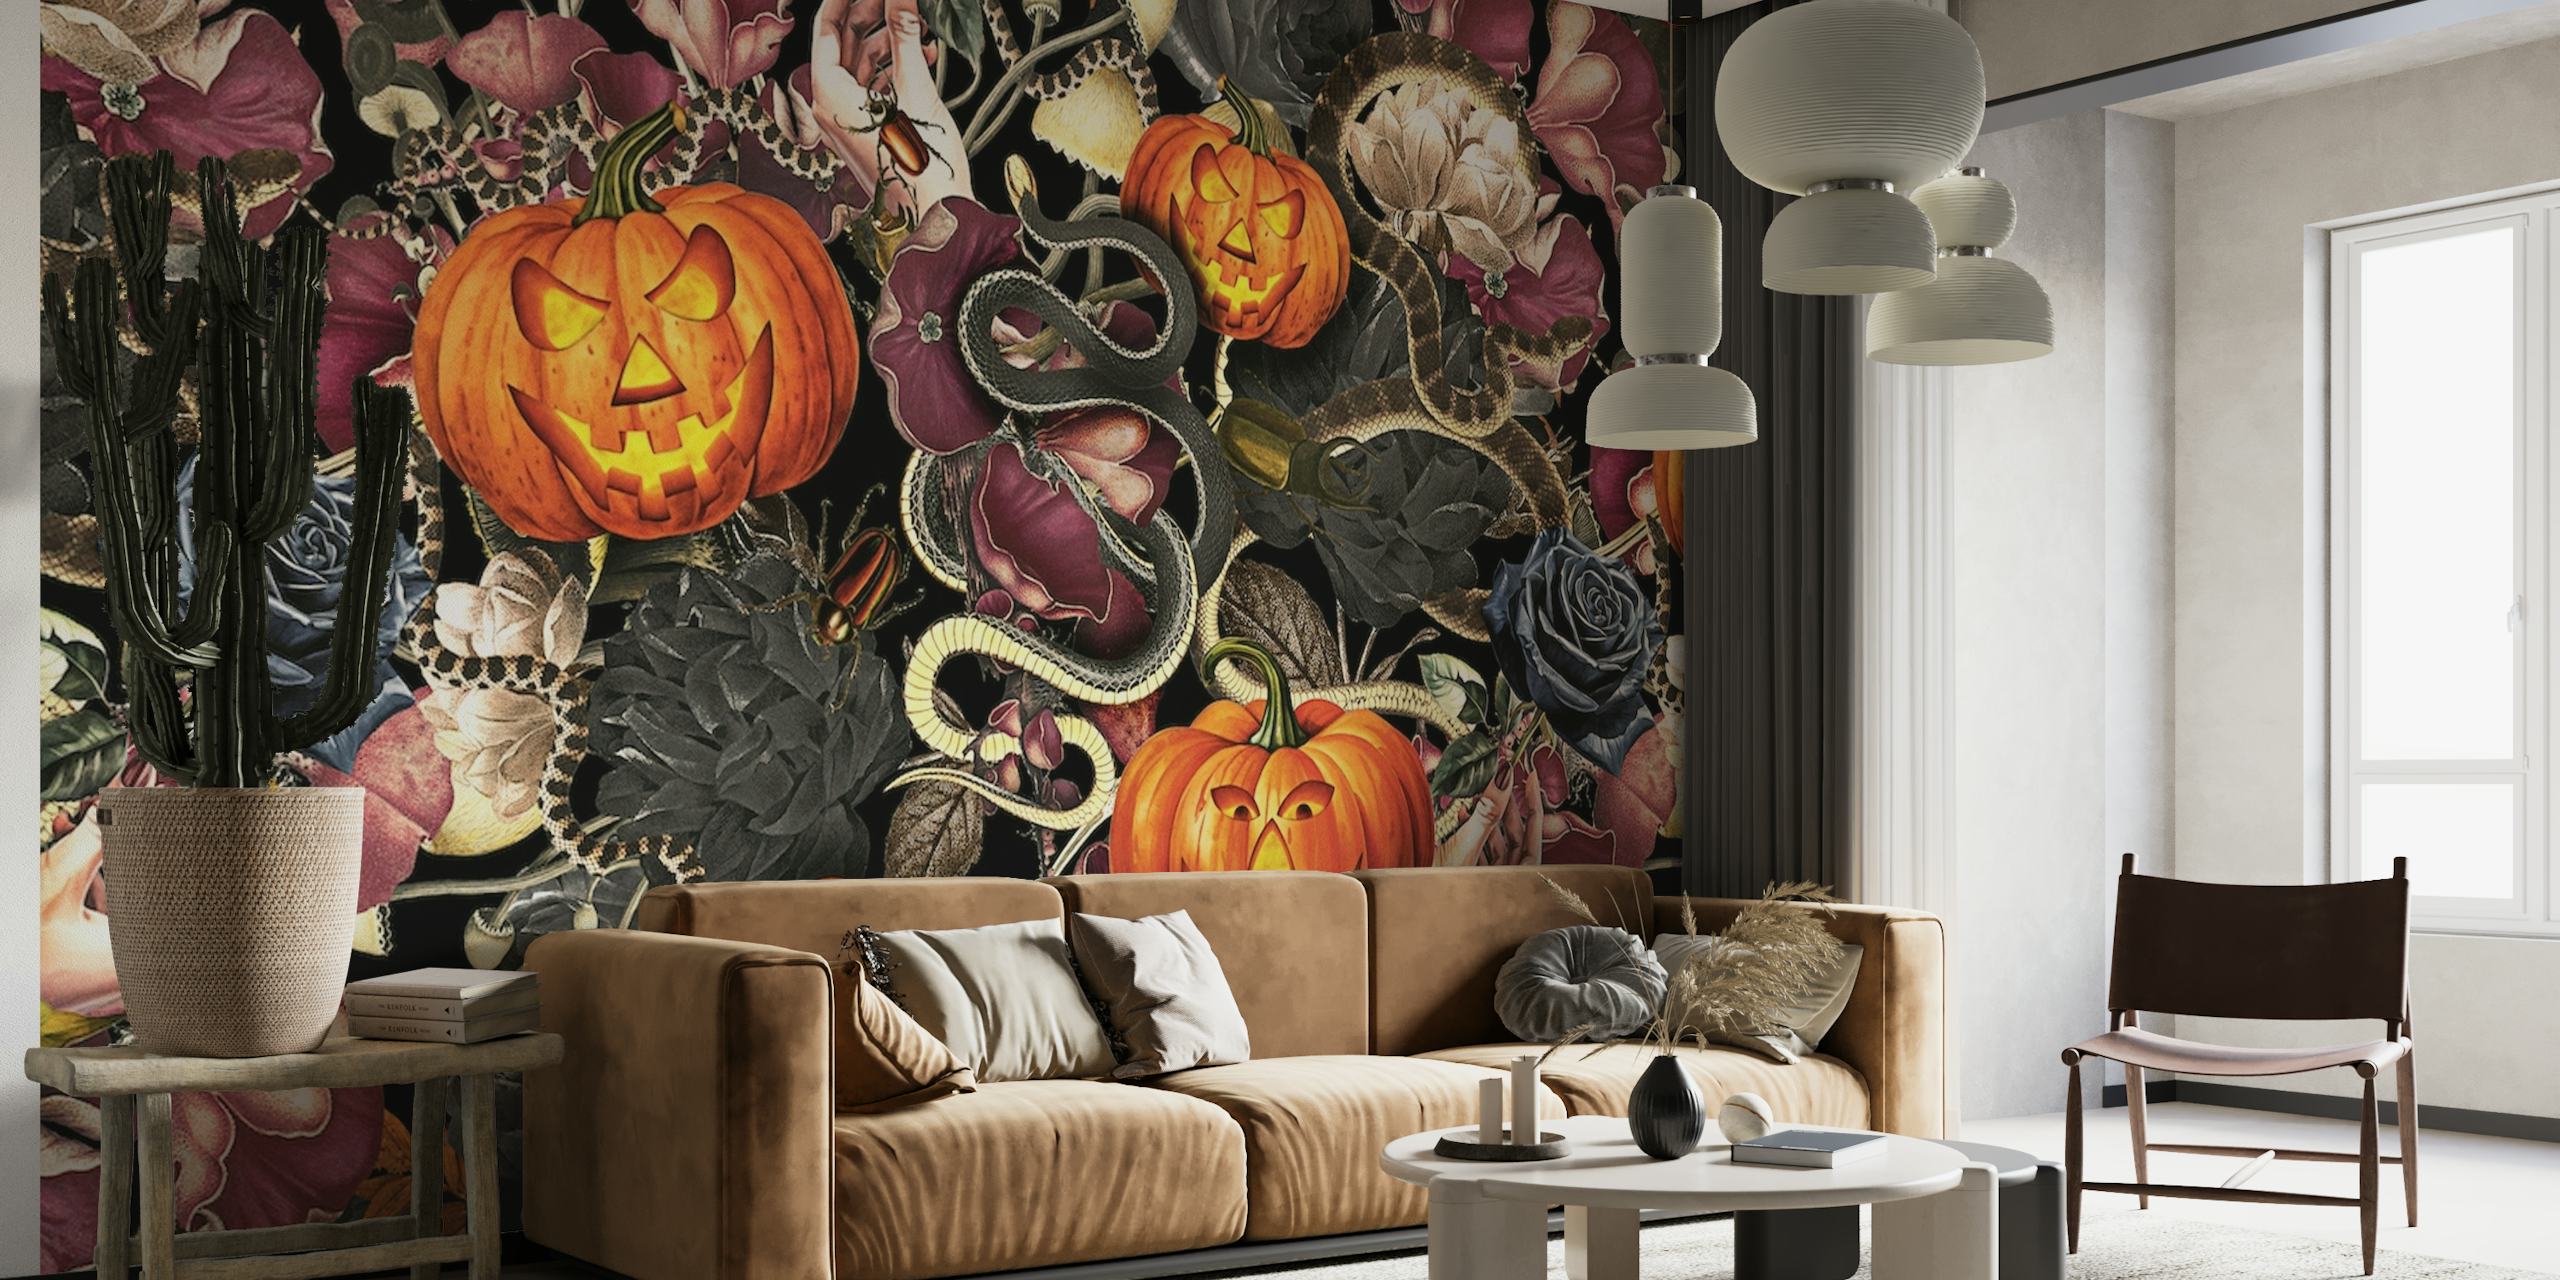 Mural de pared con temática de Halloween con calabazas y serpientes talladas sobre un fondo floral oscuro